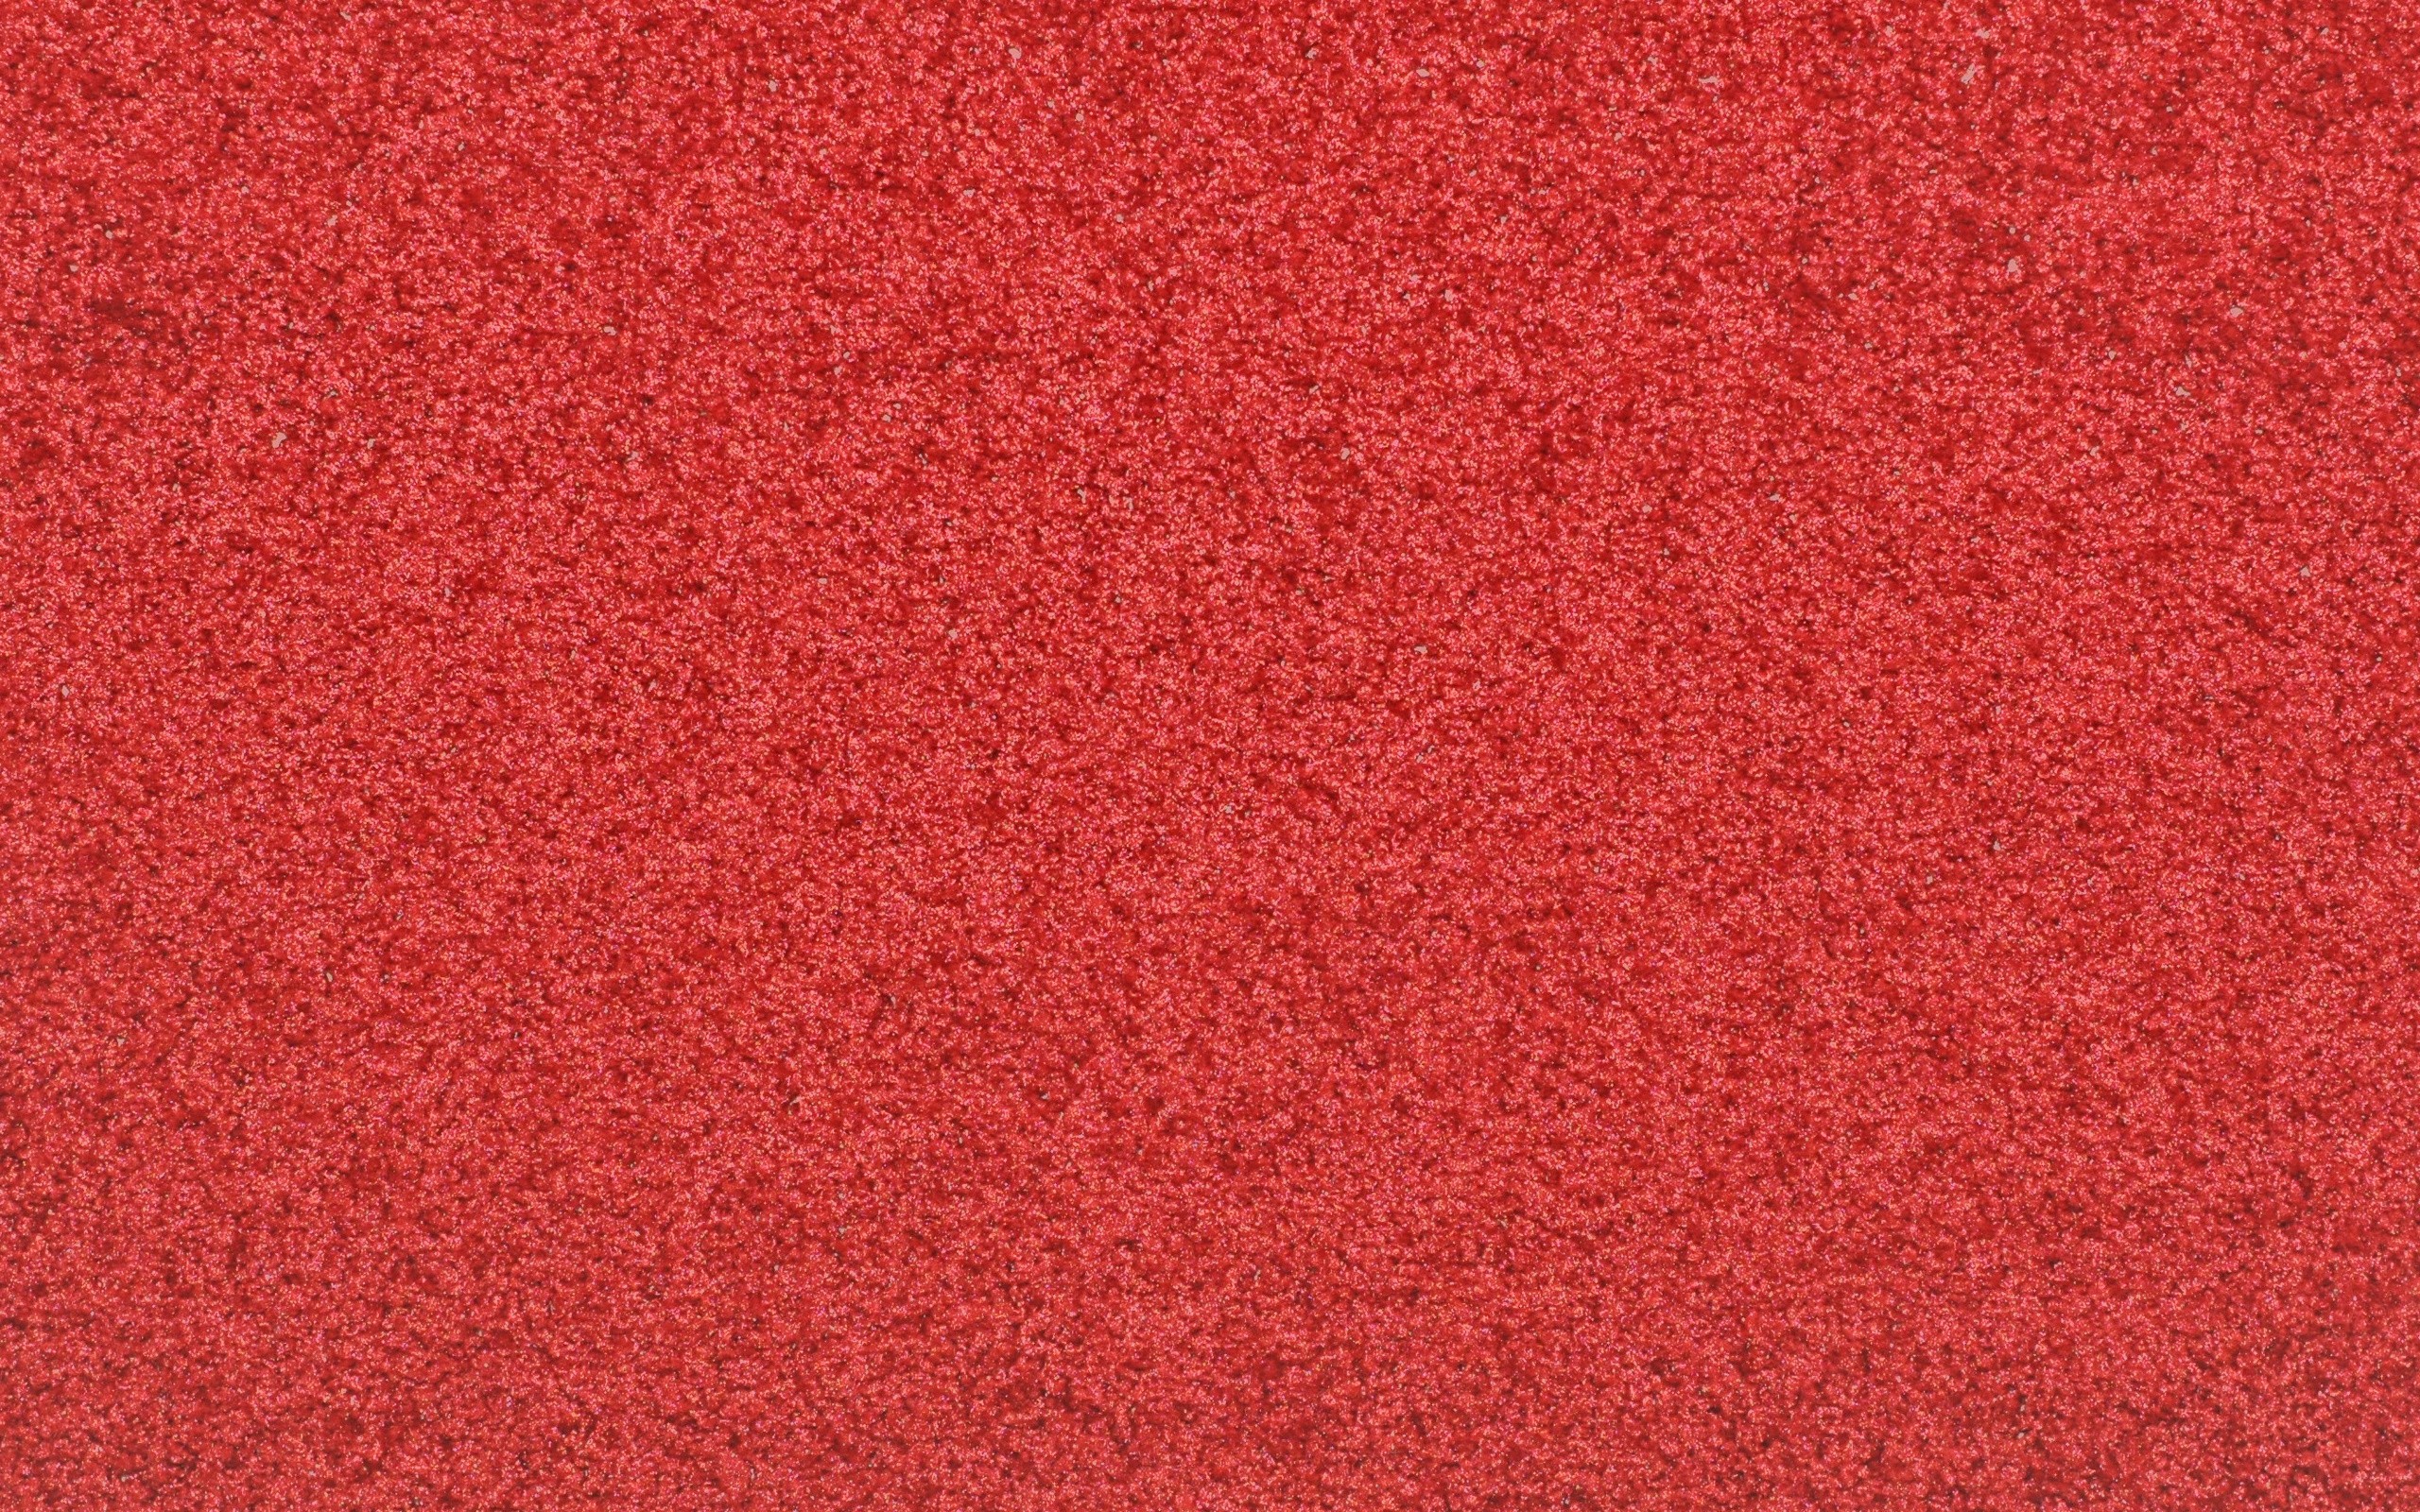 カーペット壁紙,赤,ピンク,カーマイン,繊維,パターン